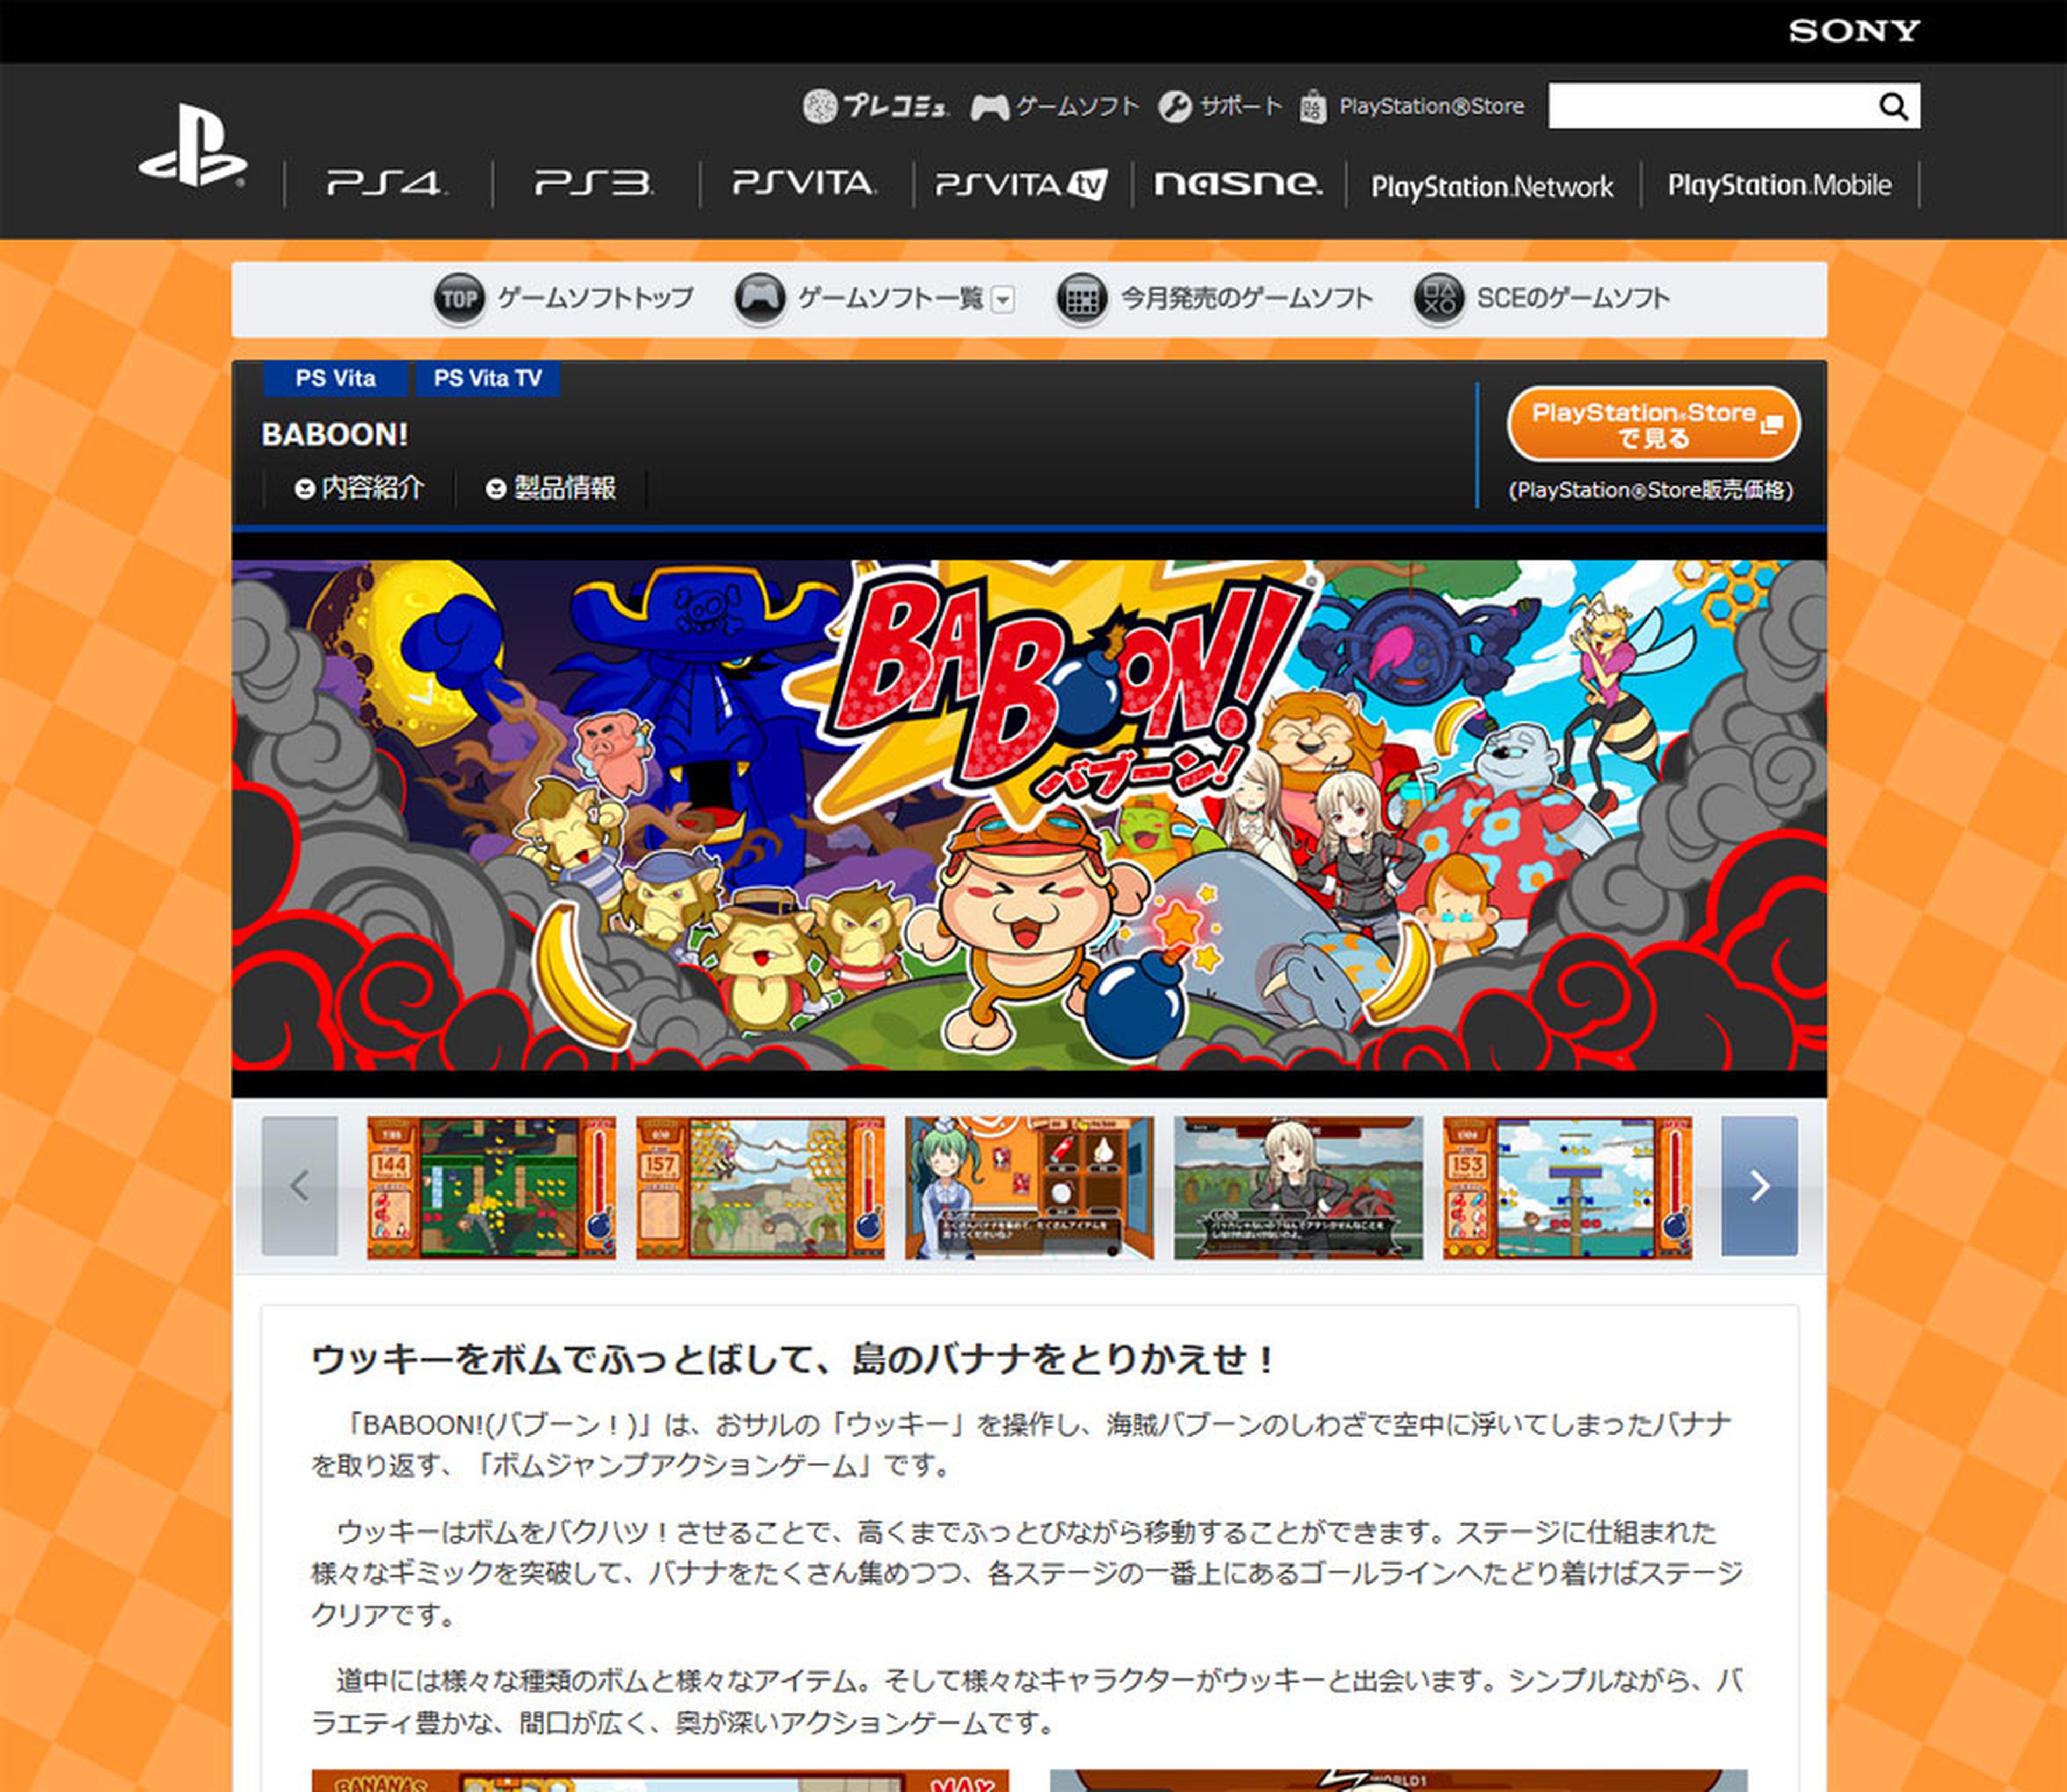 Ficha de "Baboon!" en jp.playstation.com, lanzado en Japón el 11 de agosto por Flyhigh Works.